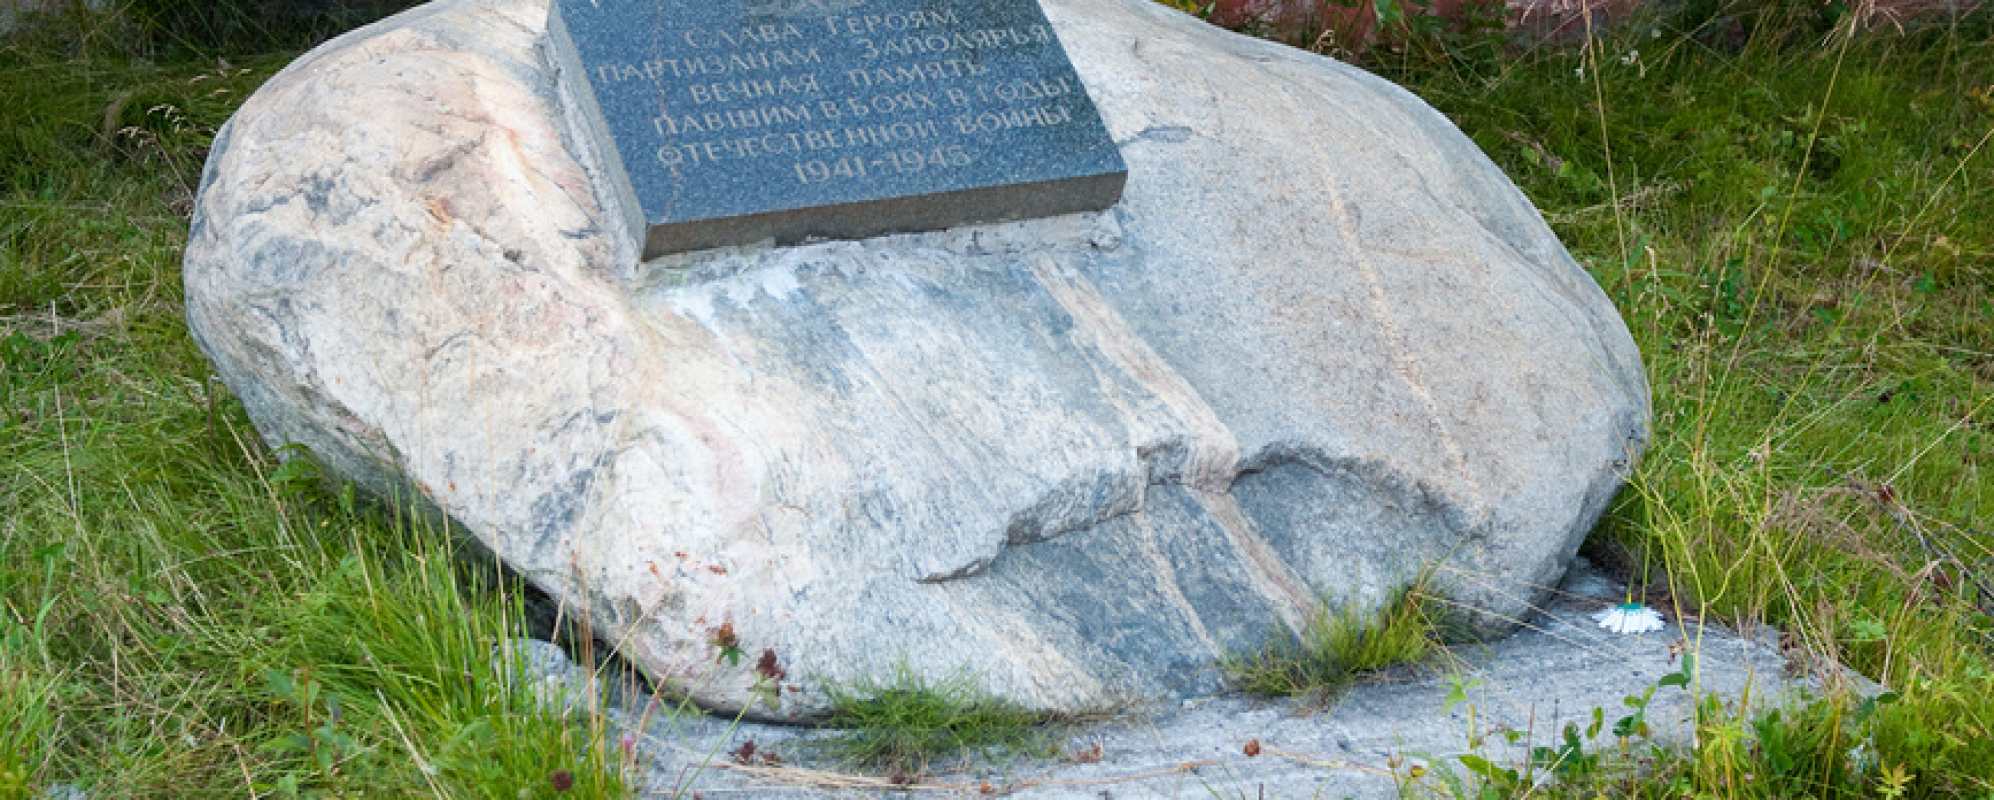 Фотографии памятника Памятный камень В память о погибших партизанах Заполярья